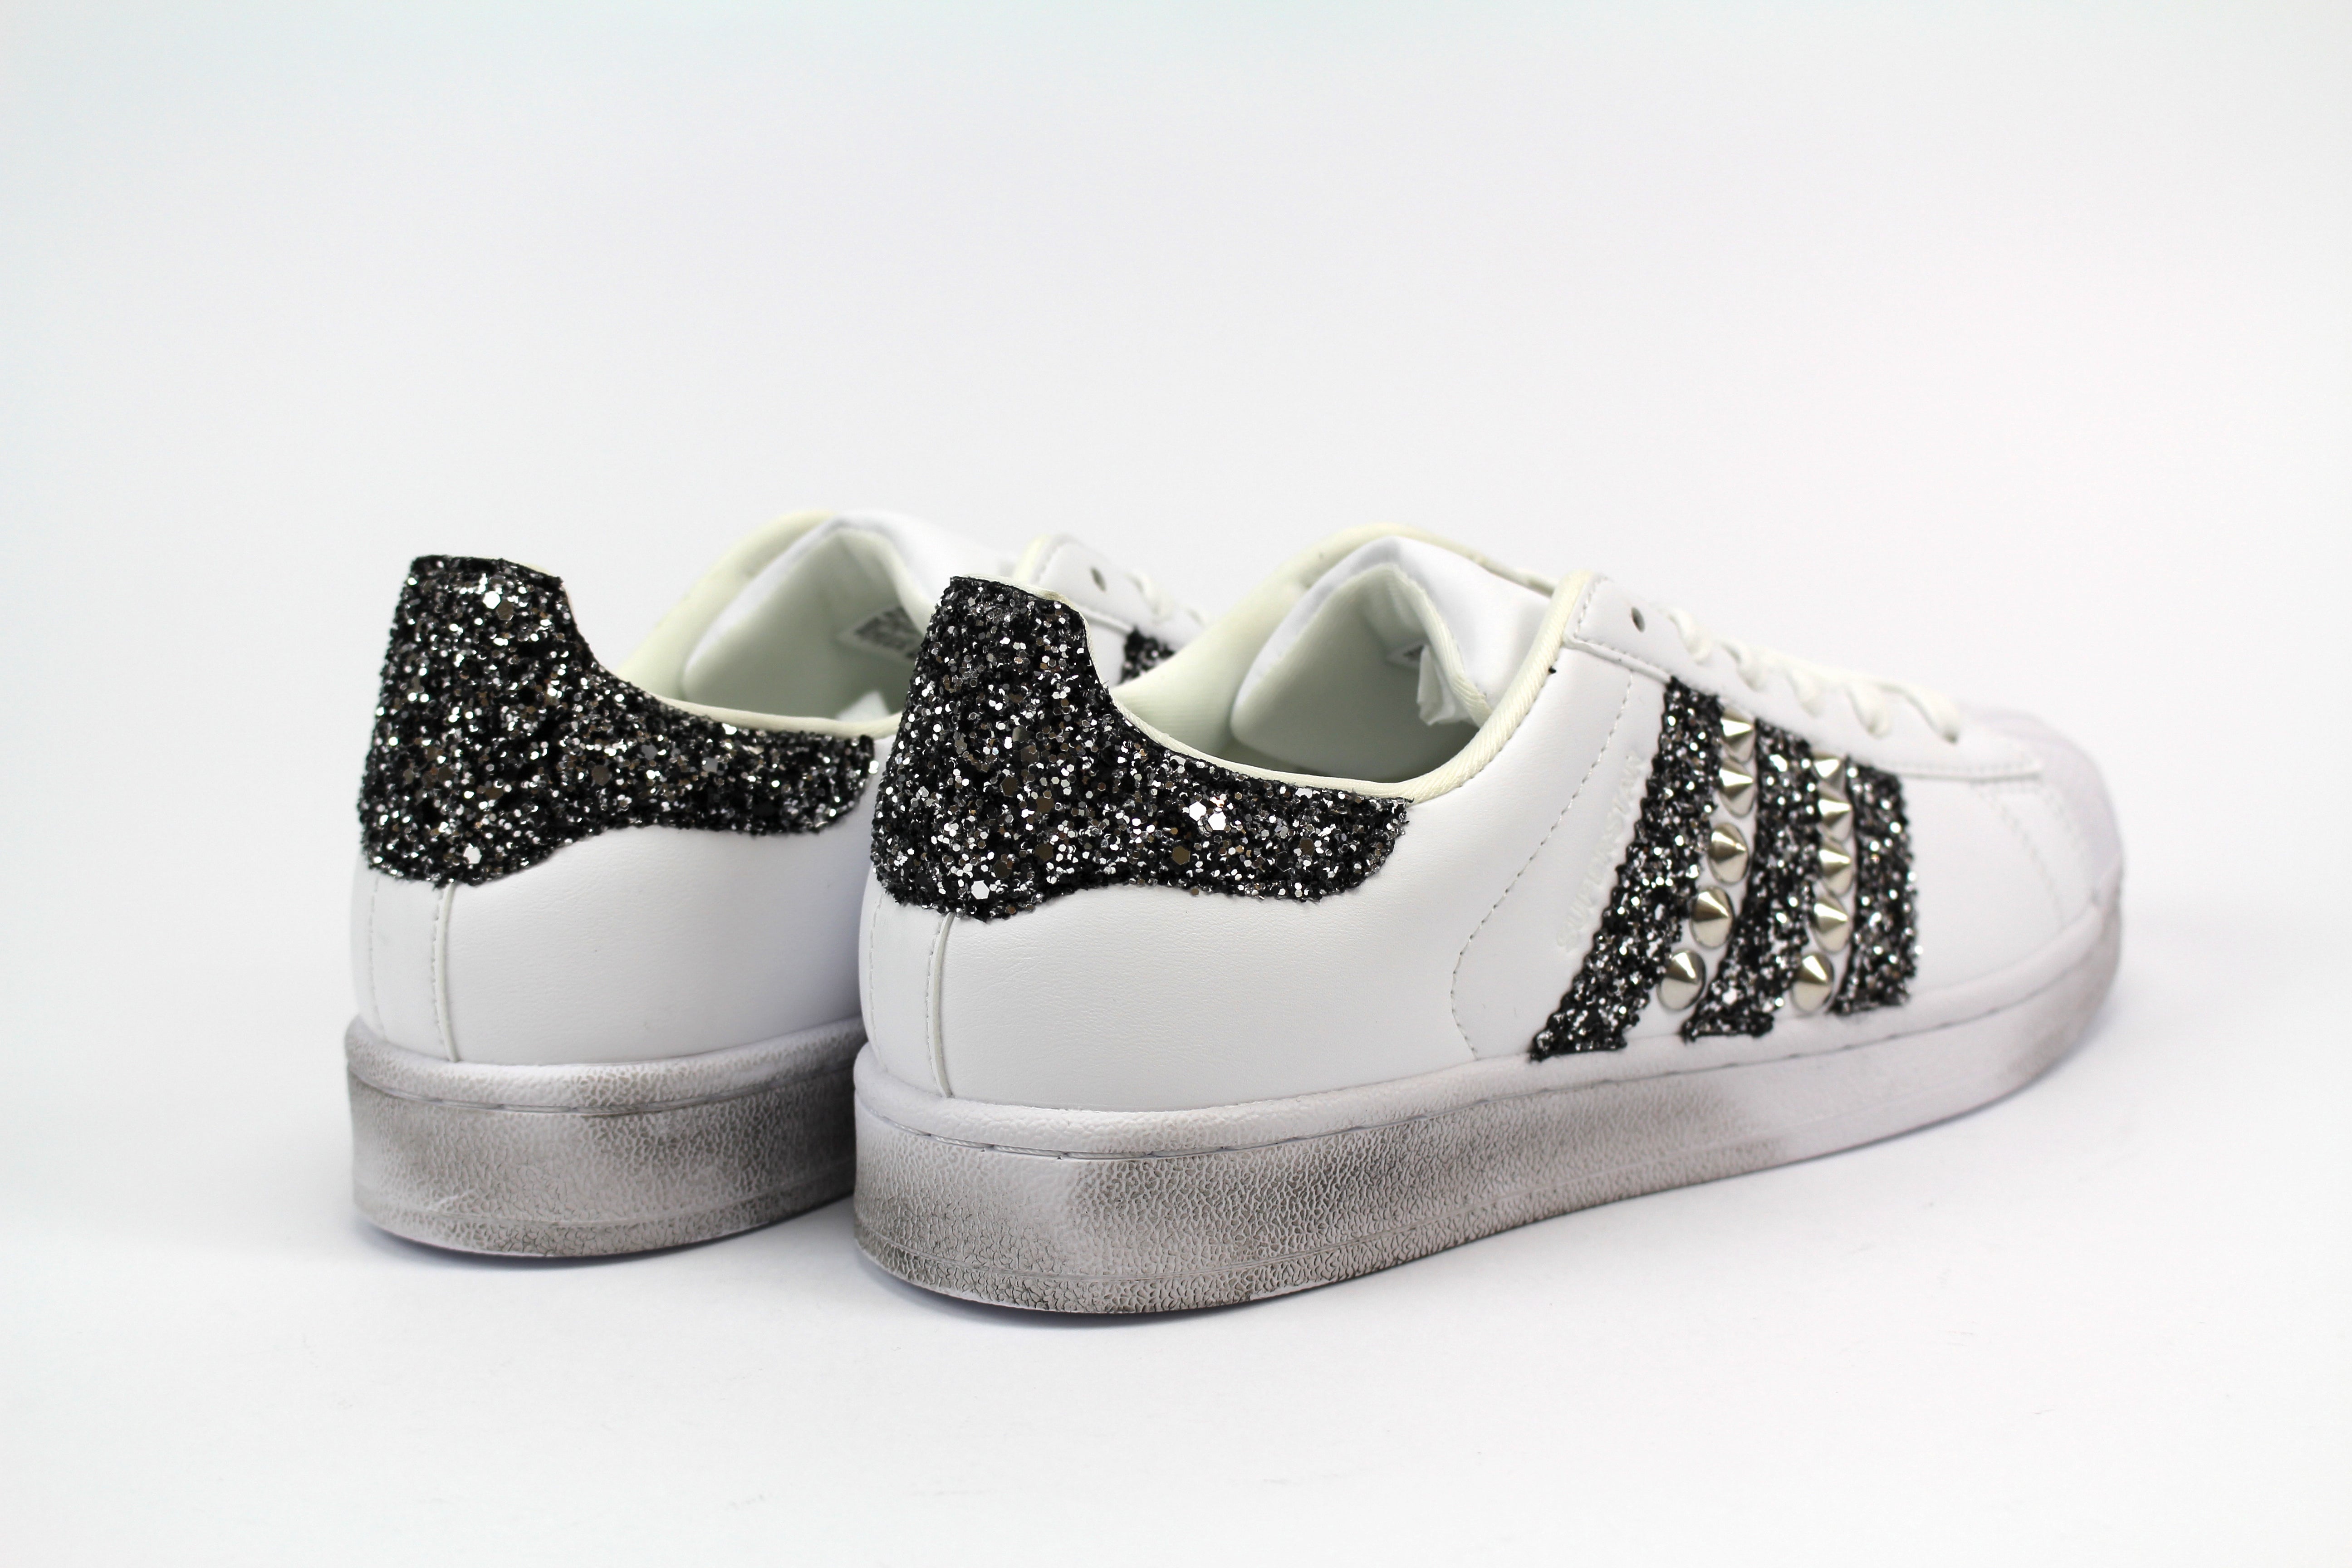 Adidas Superstar Black/Silver Glitter e Borchie personalizzata